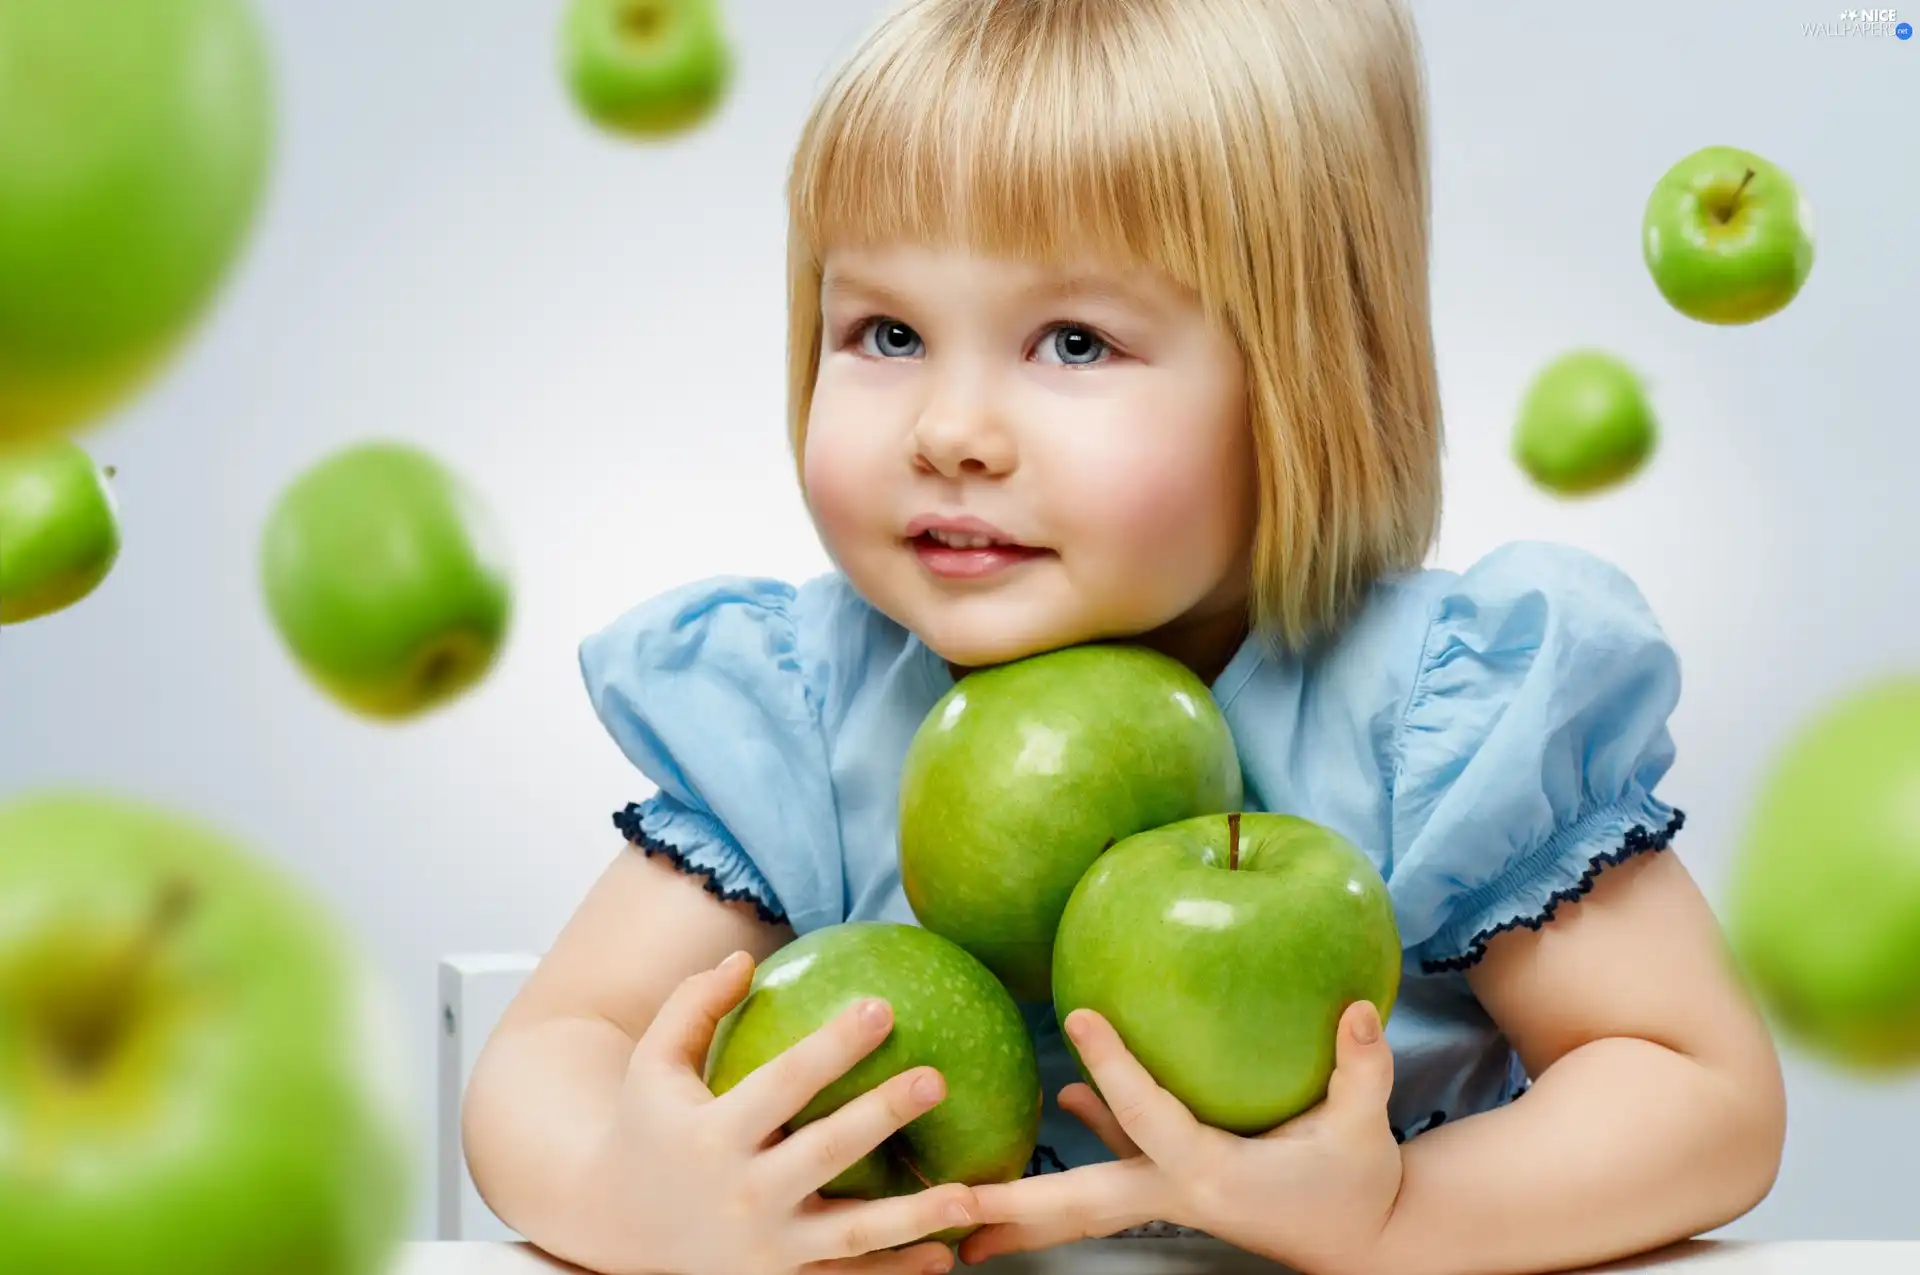 apples, girl, green ones